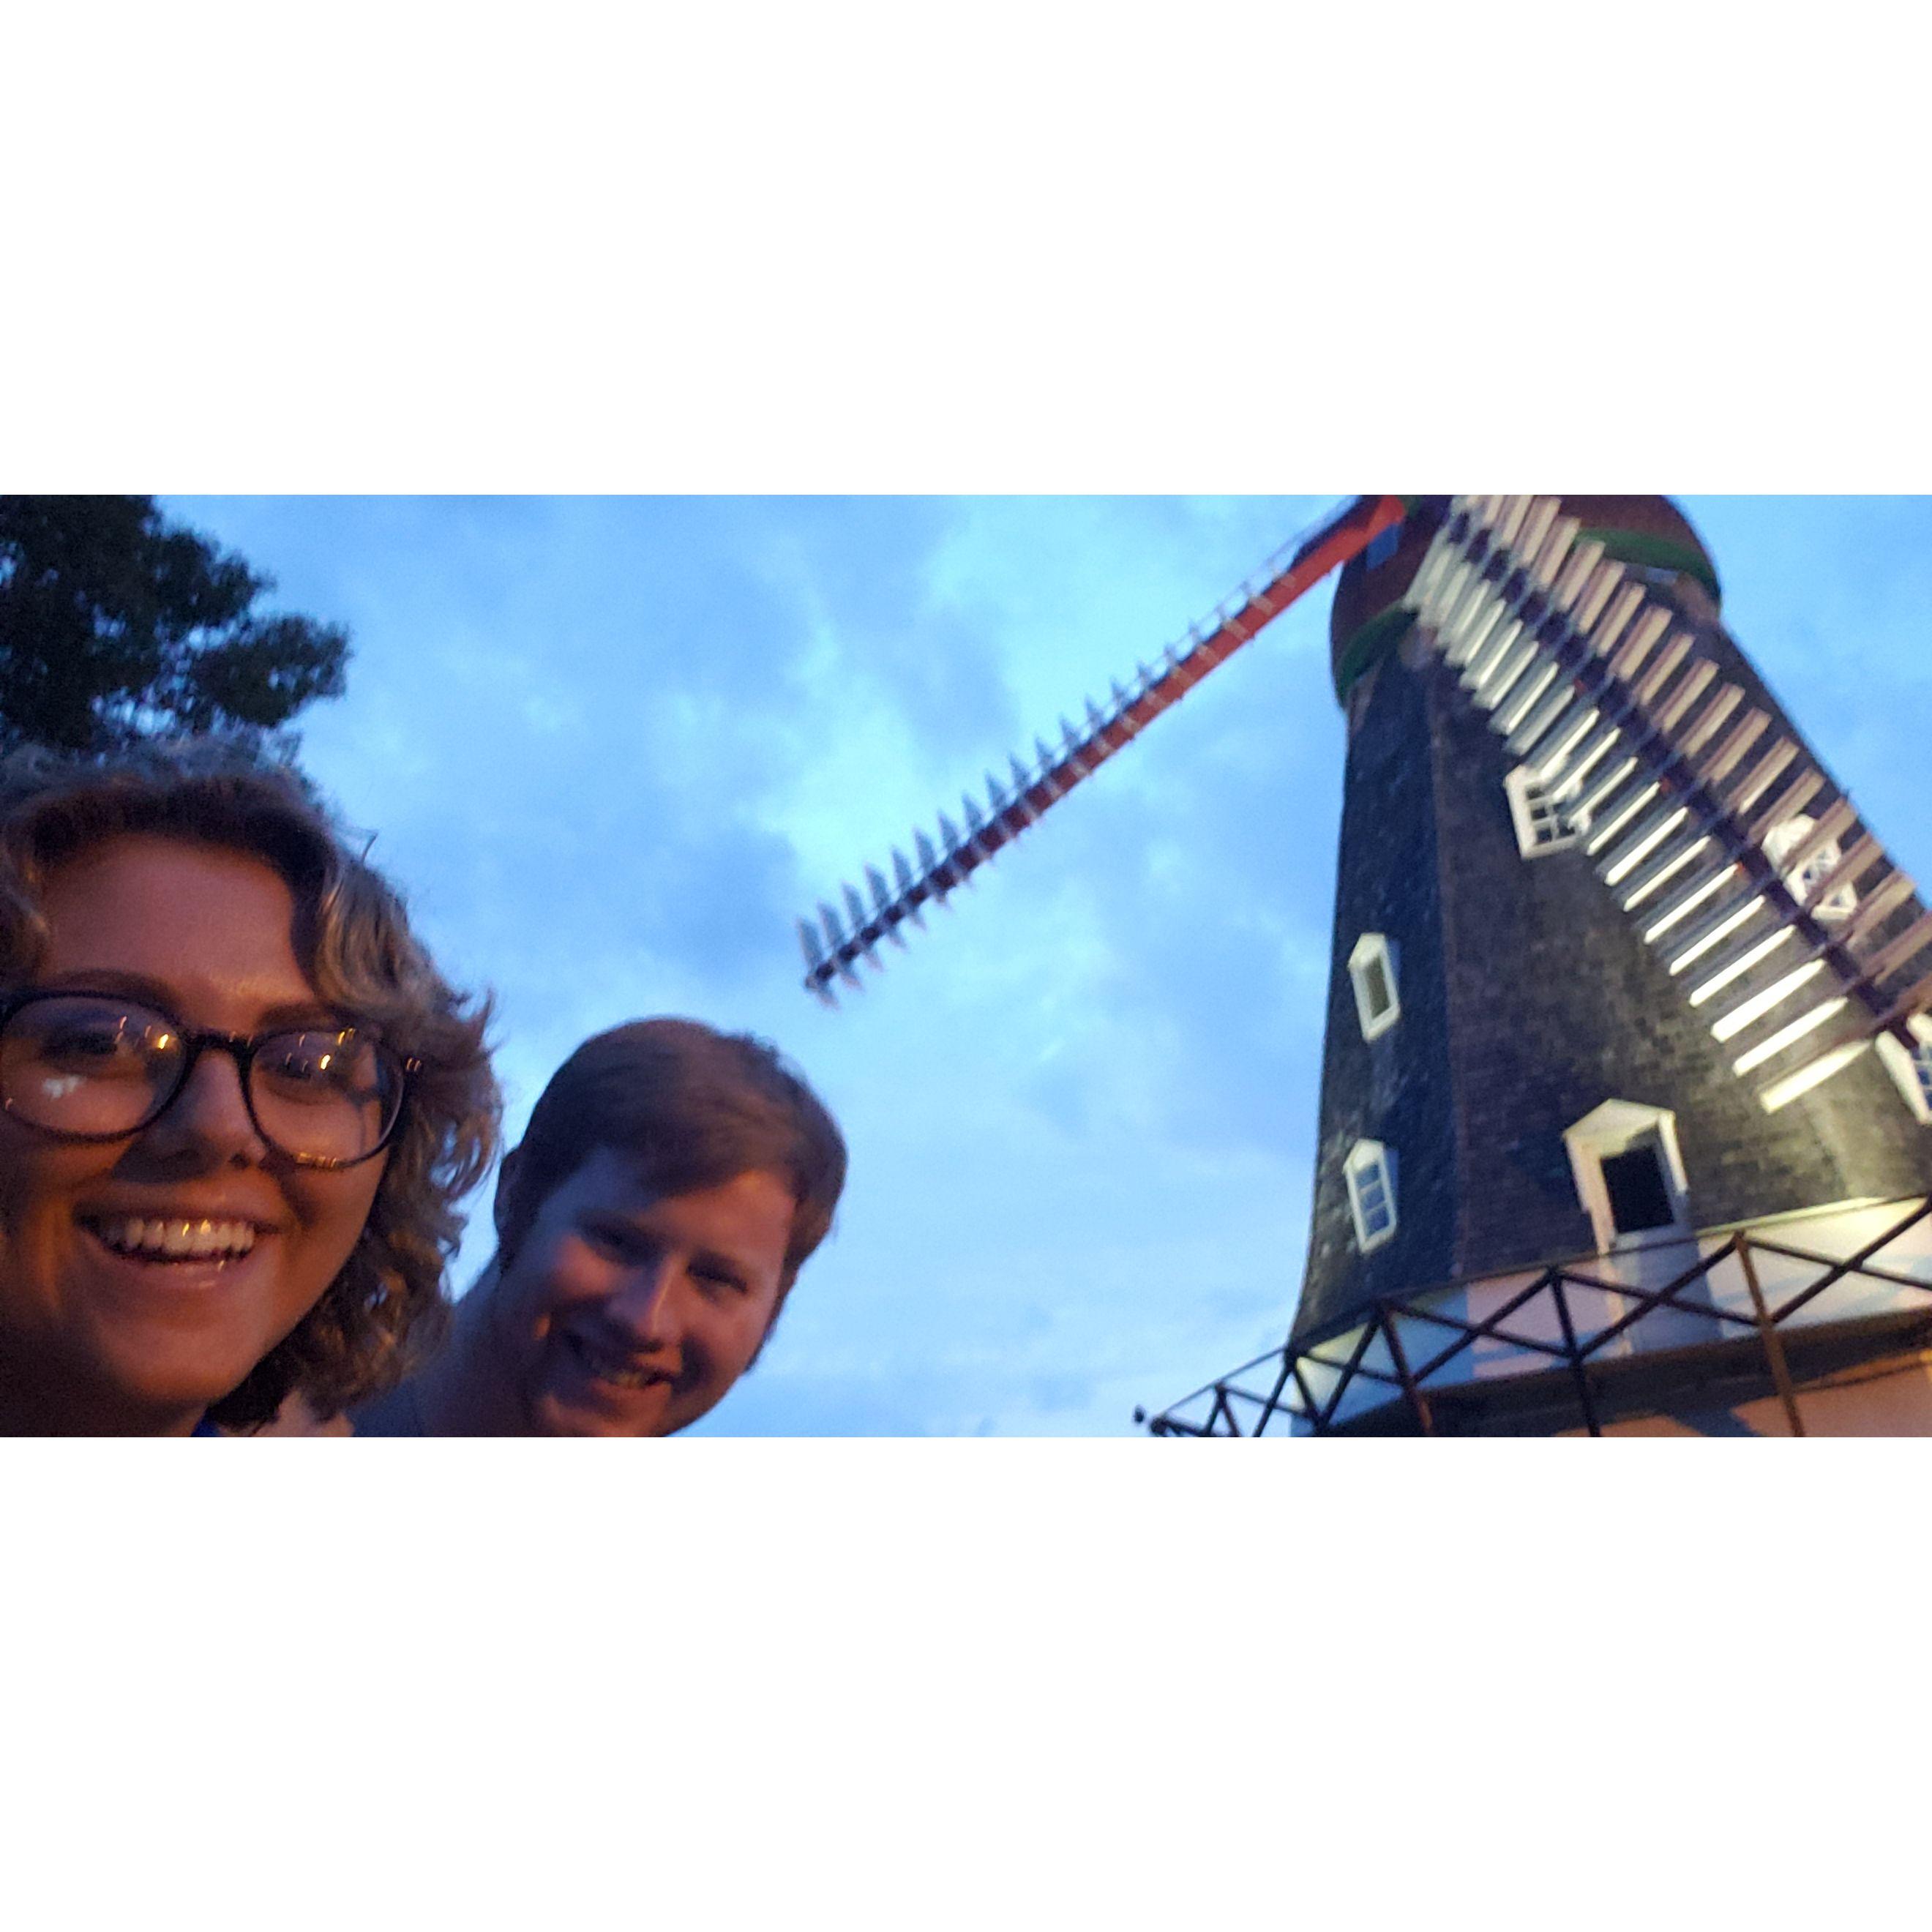 Danish Windmill 2019